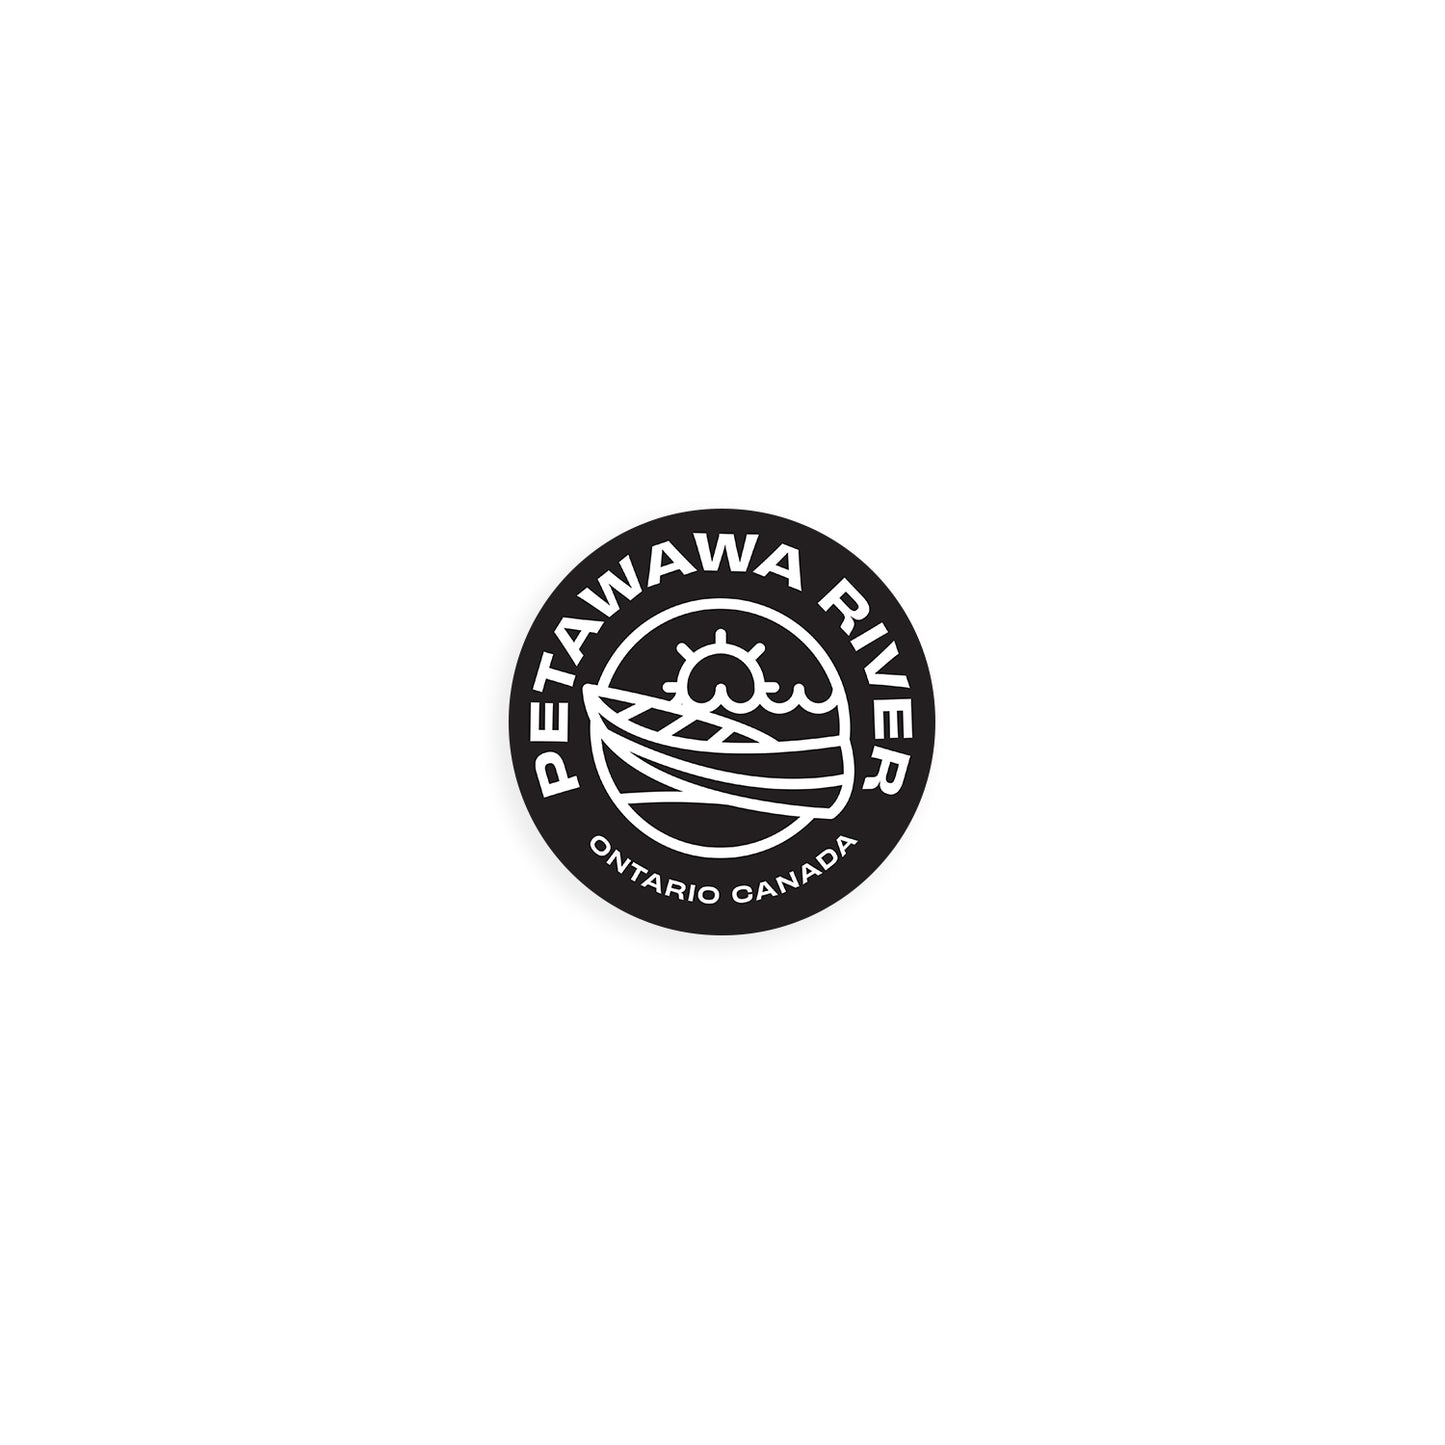 Petawawa River Sticker